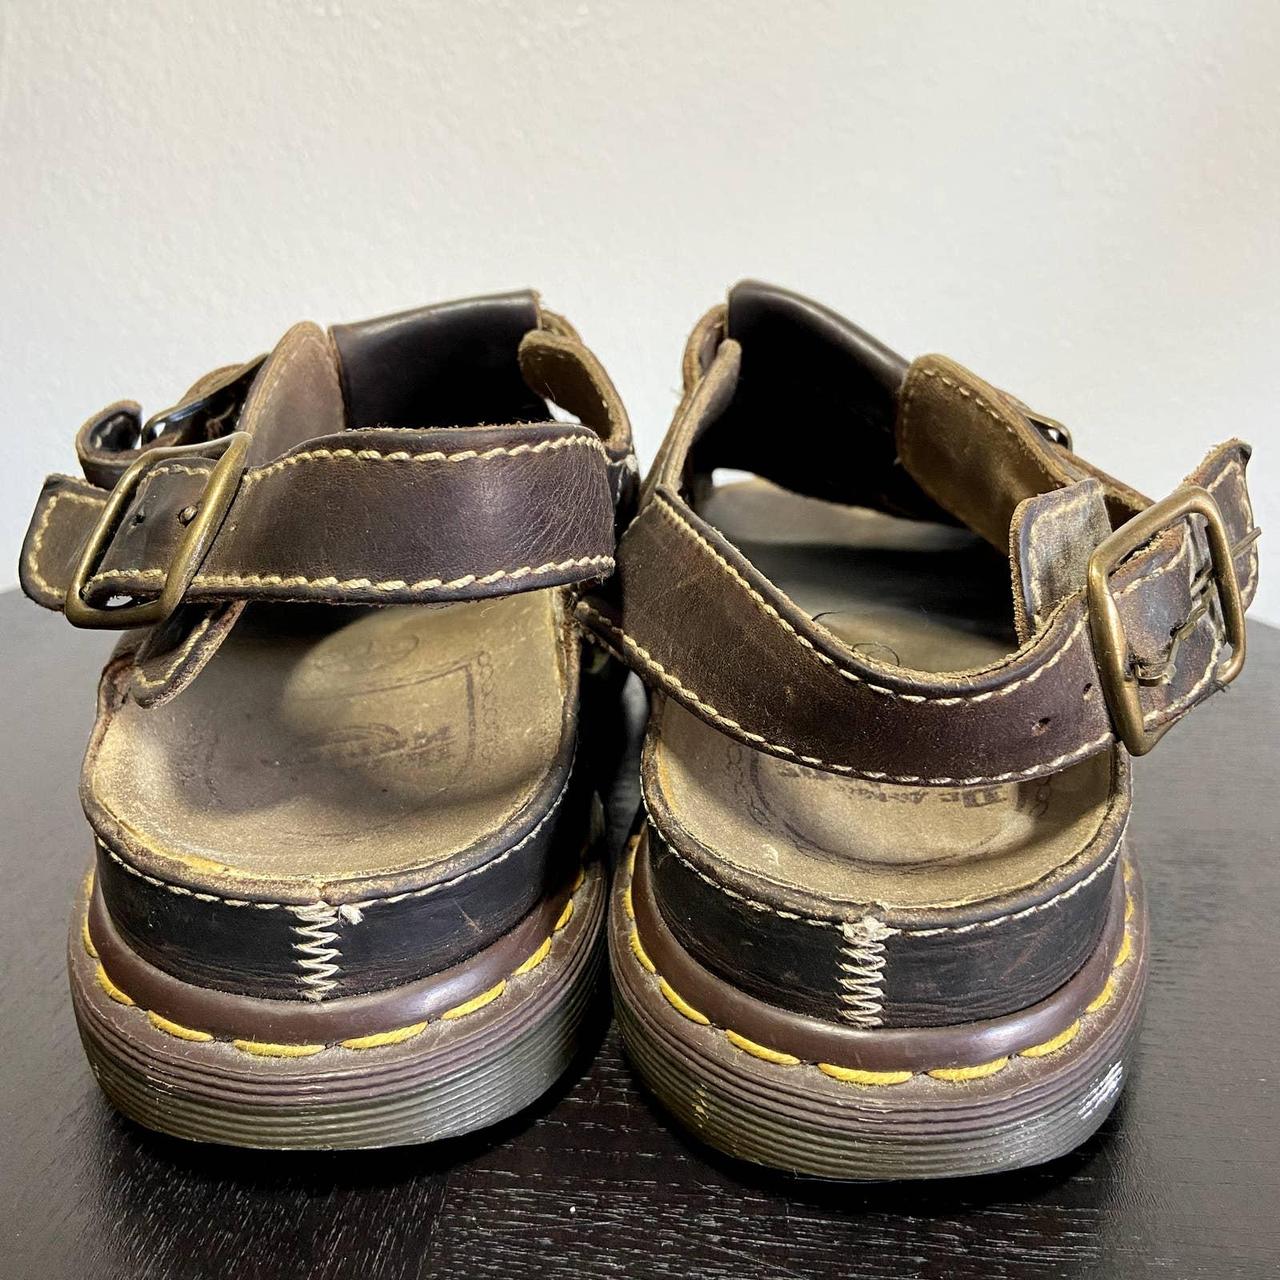 90s Dr Martens vintage sandals made in England brown... - Depop